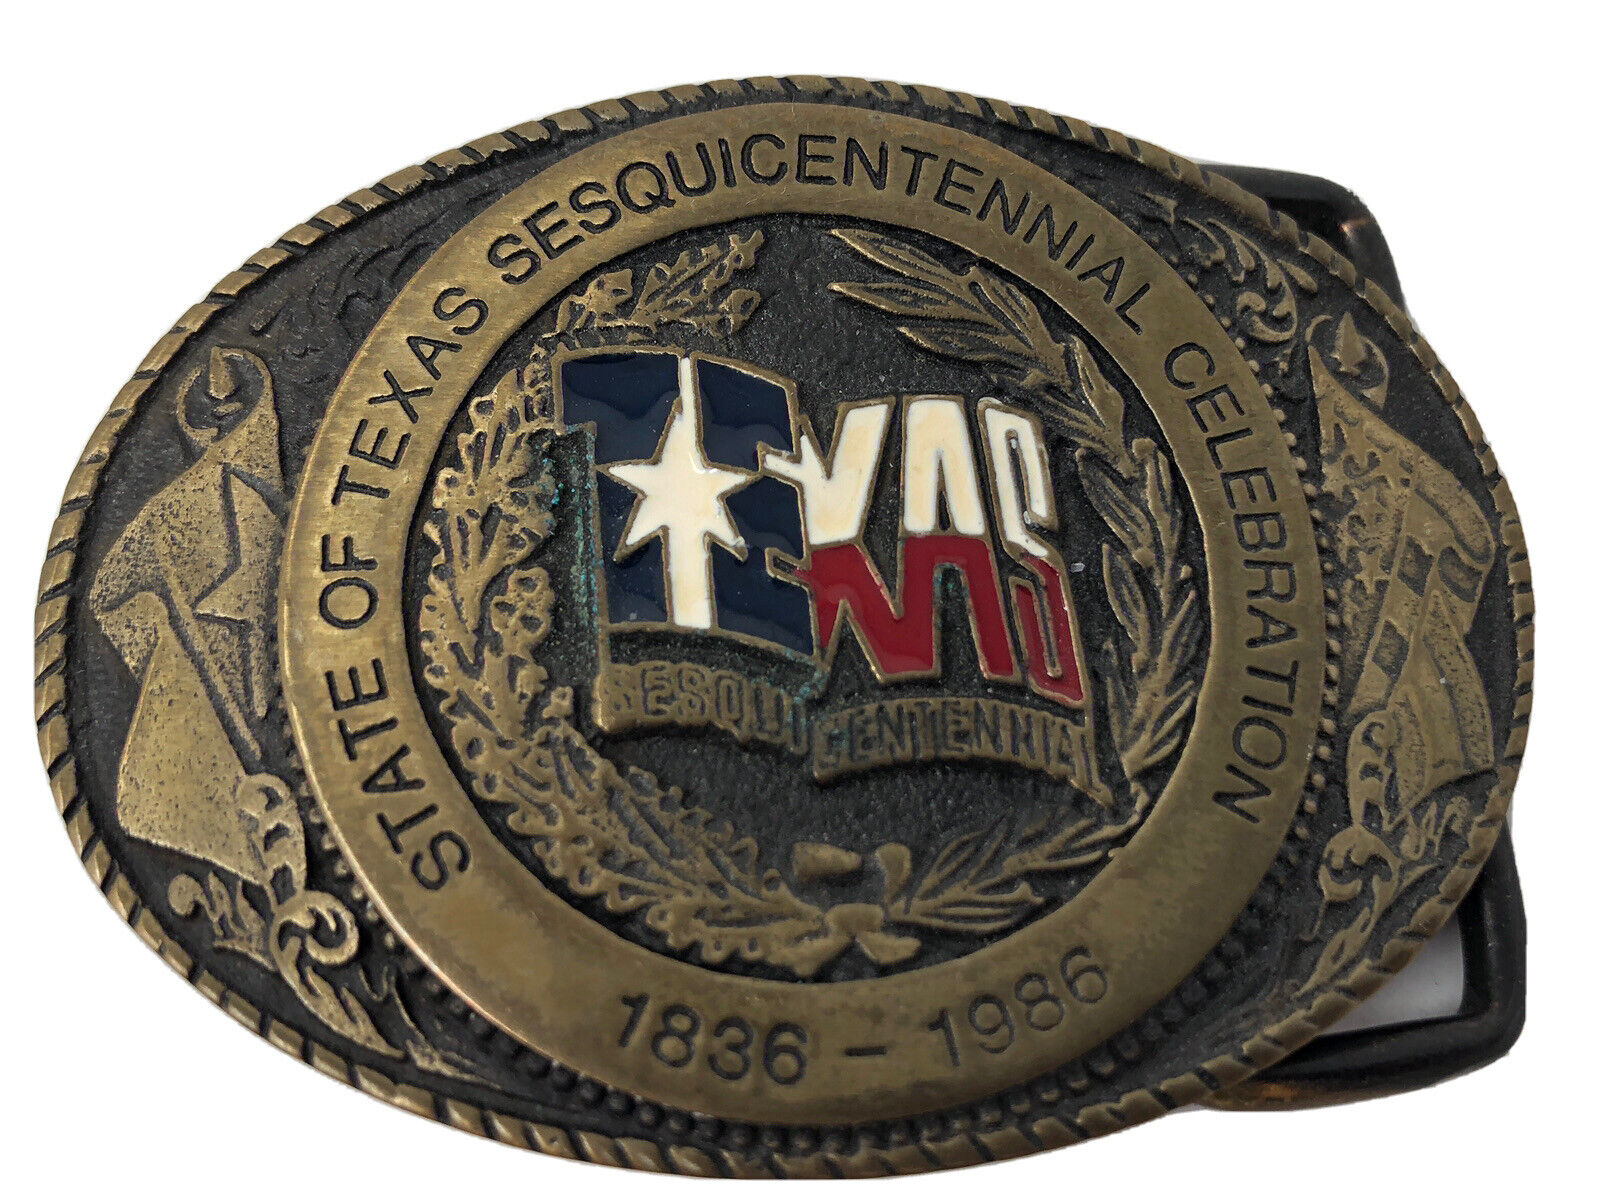 State of Texas Sesquincentennial Belt Buckle Brass USA #1857 1836 - 1986 Vintage